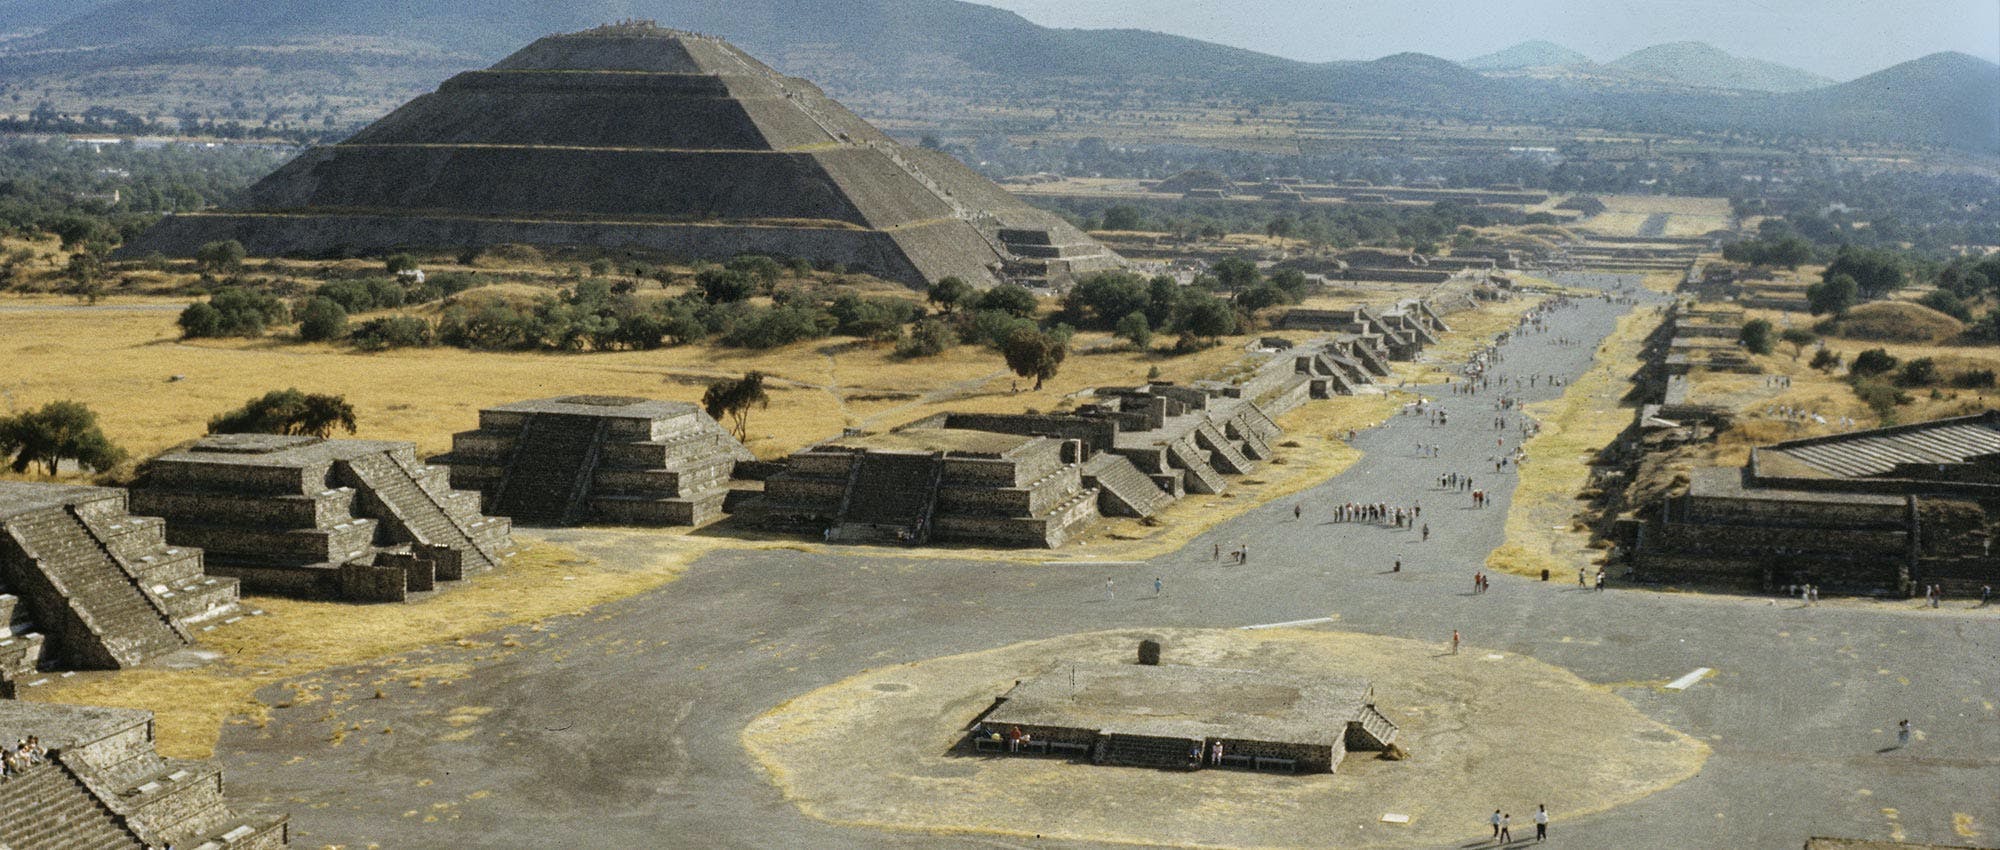 Historyczne centrum Meksyku, piramidy w Teotihuacán i degustacja napojów